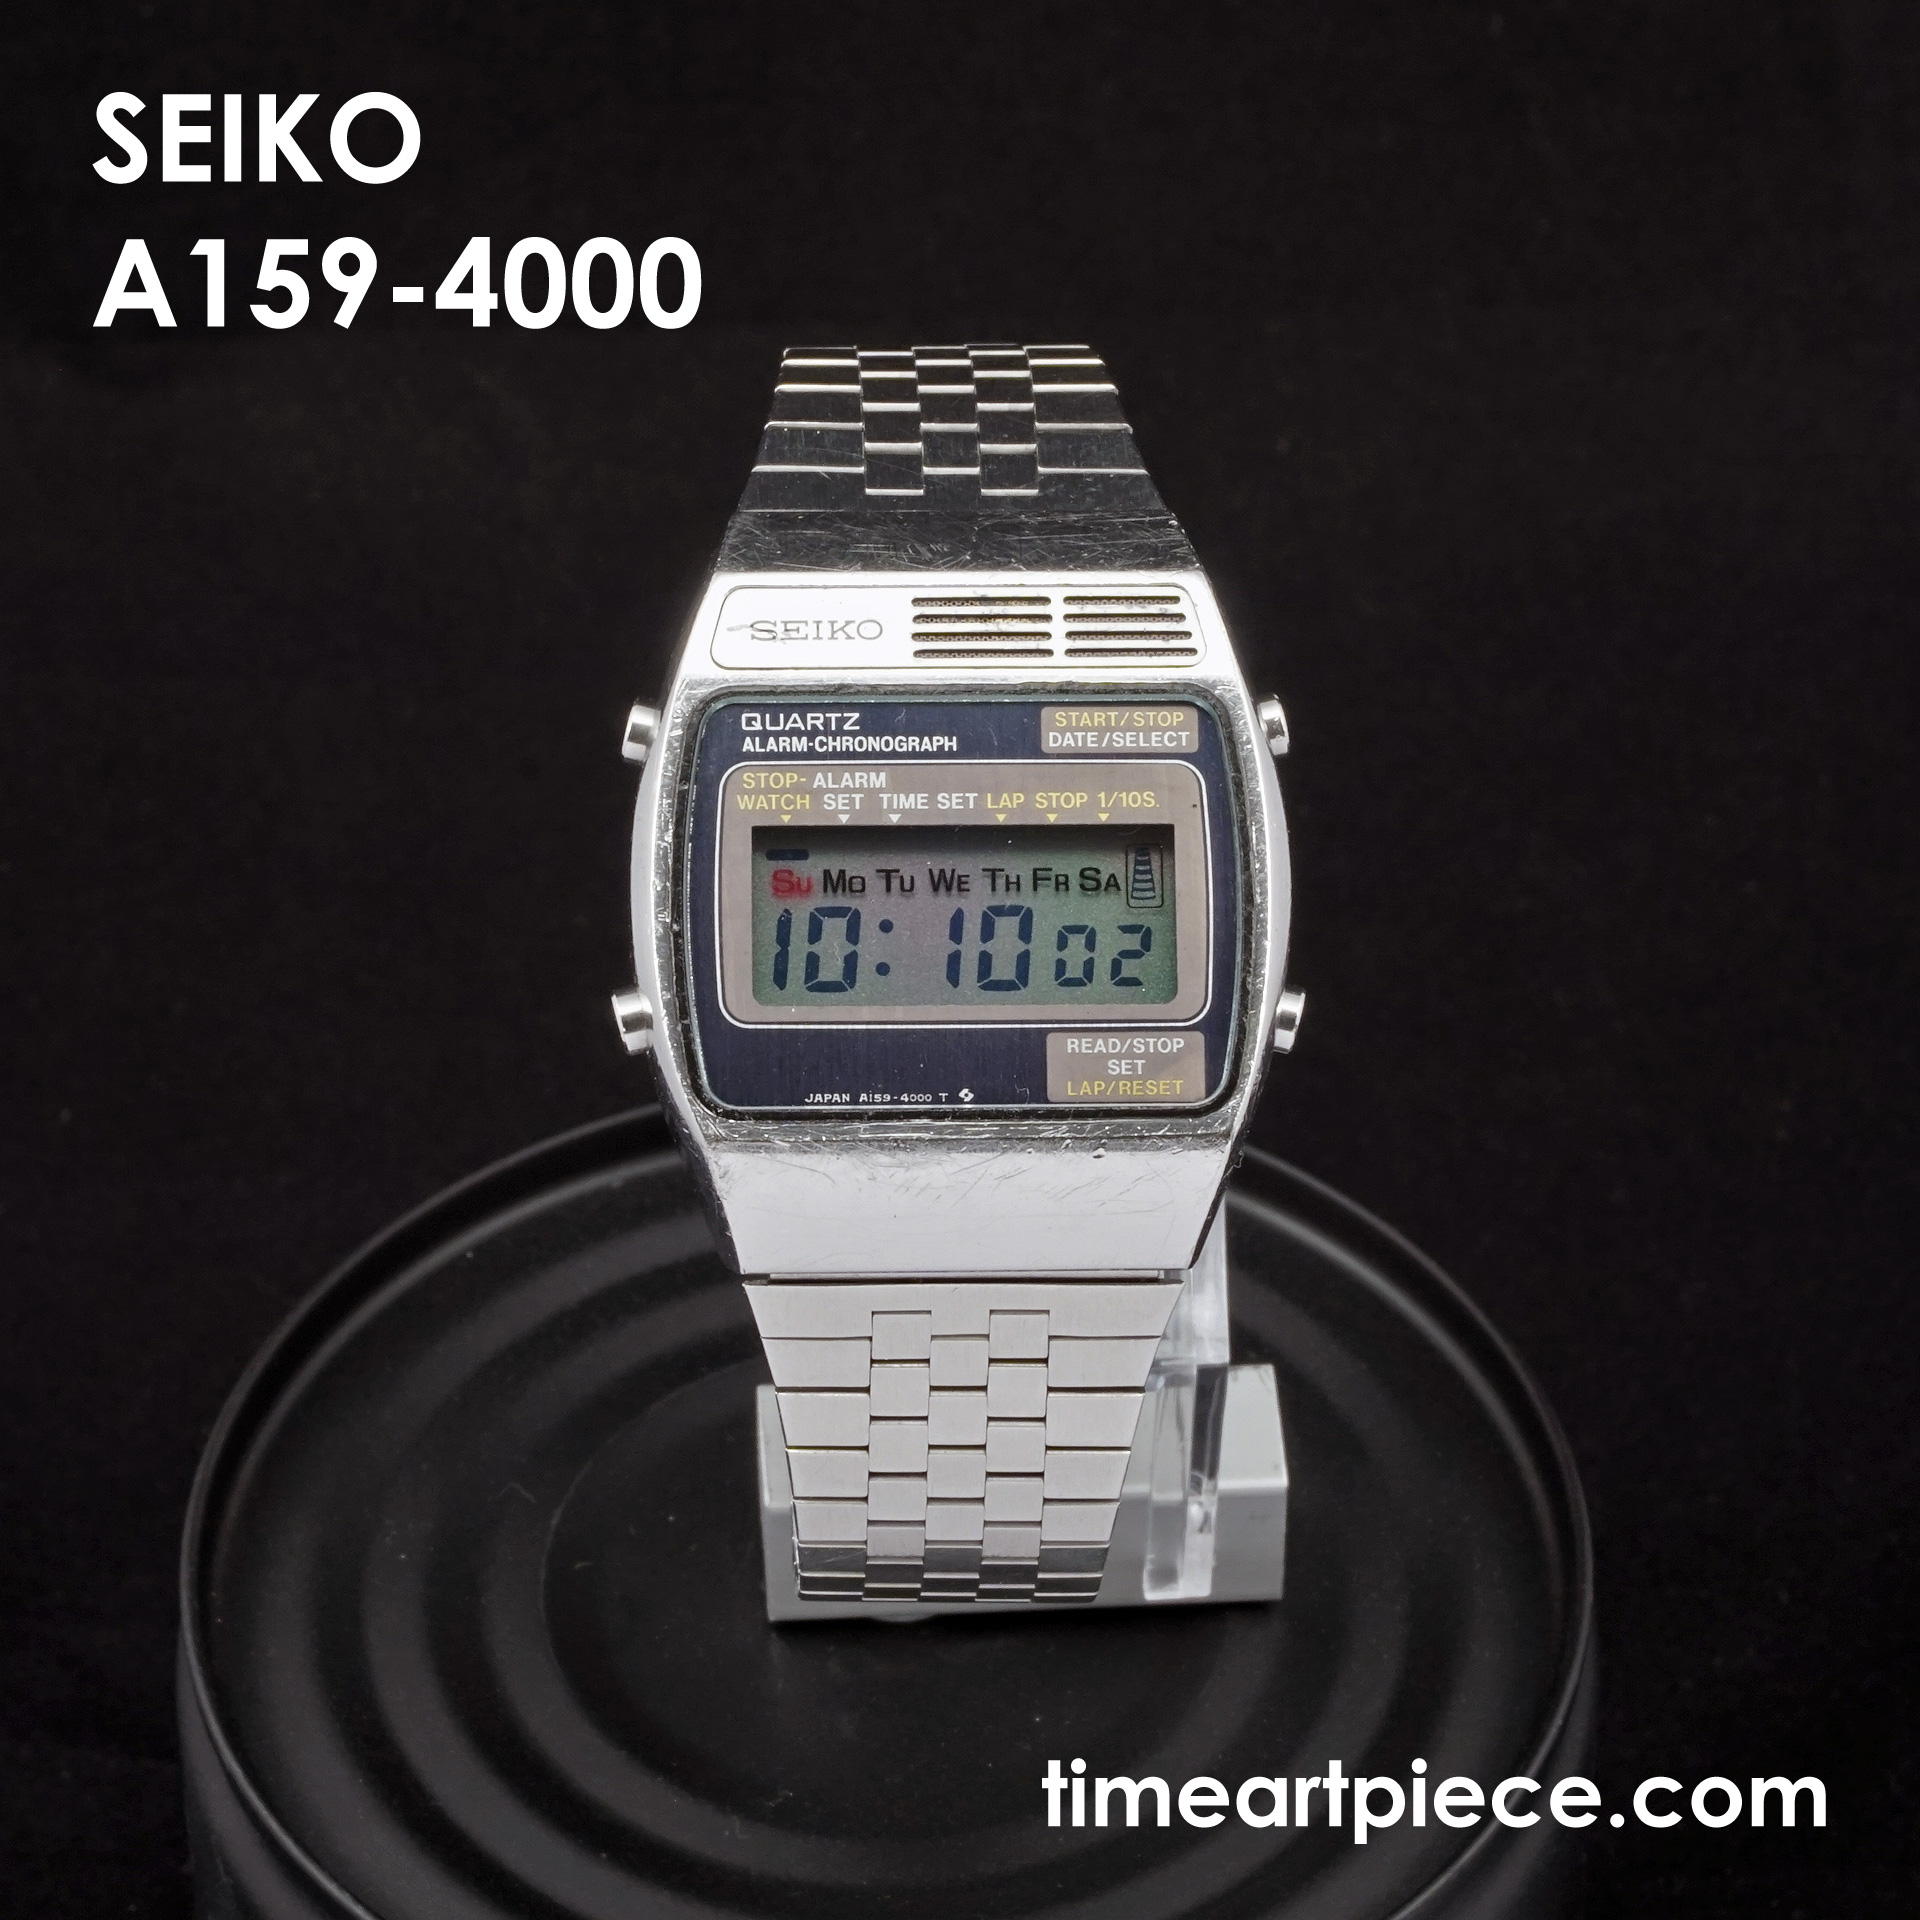 seiko first digital watch, stora fynd 59% off -